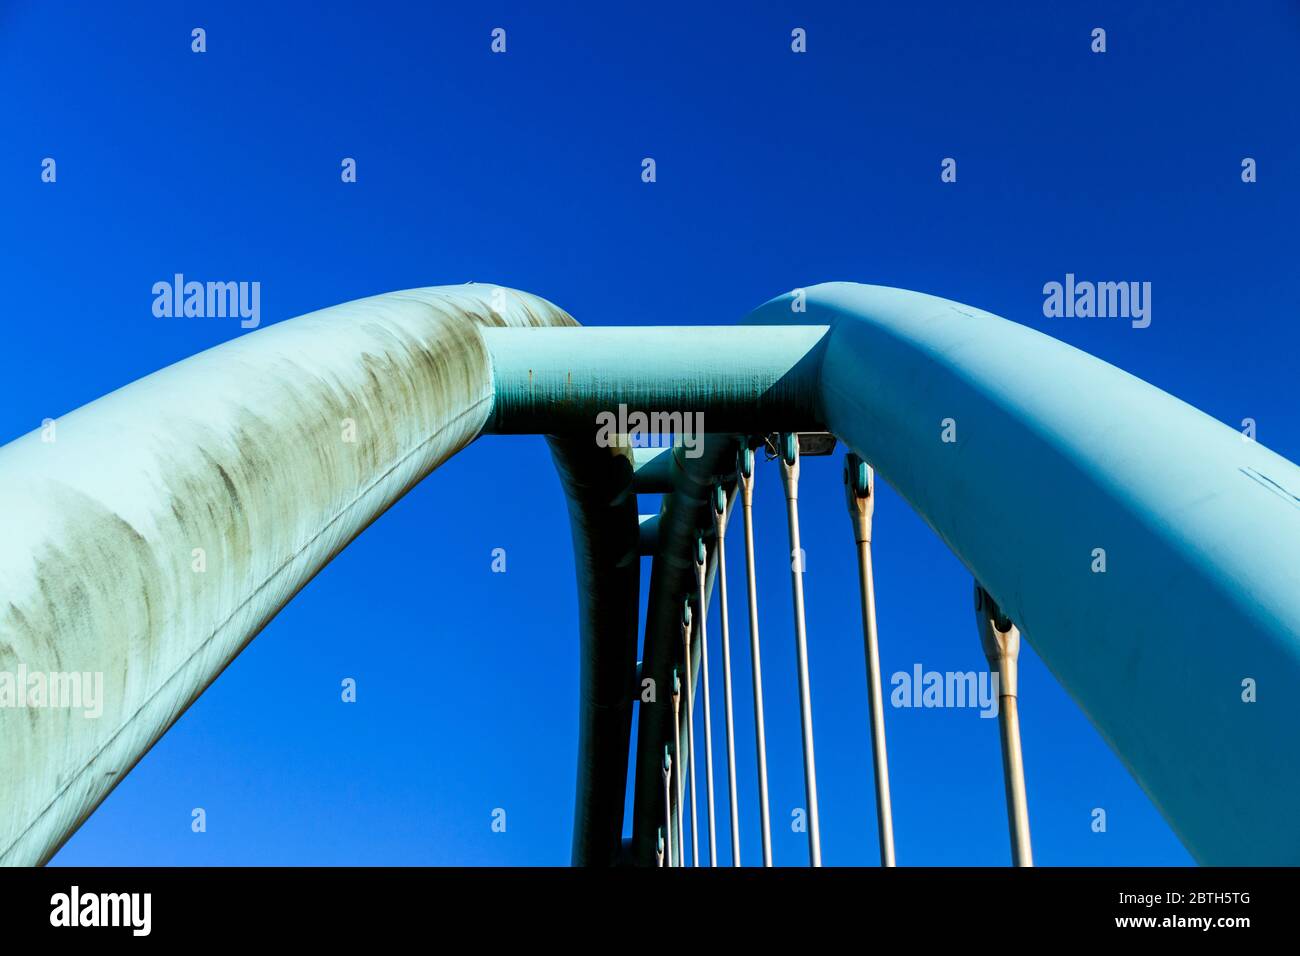 Wainwright Bridge. Stock Photo